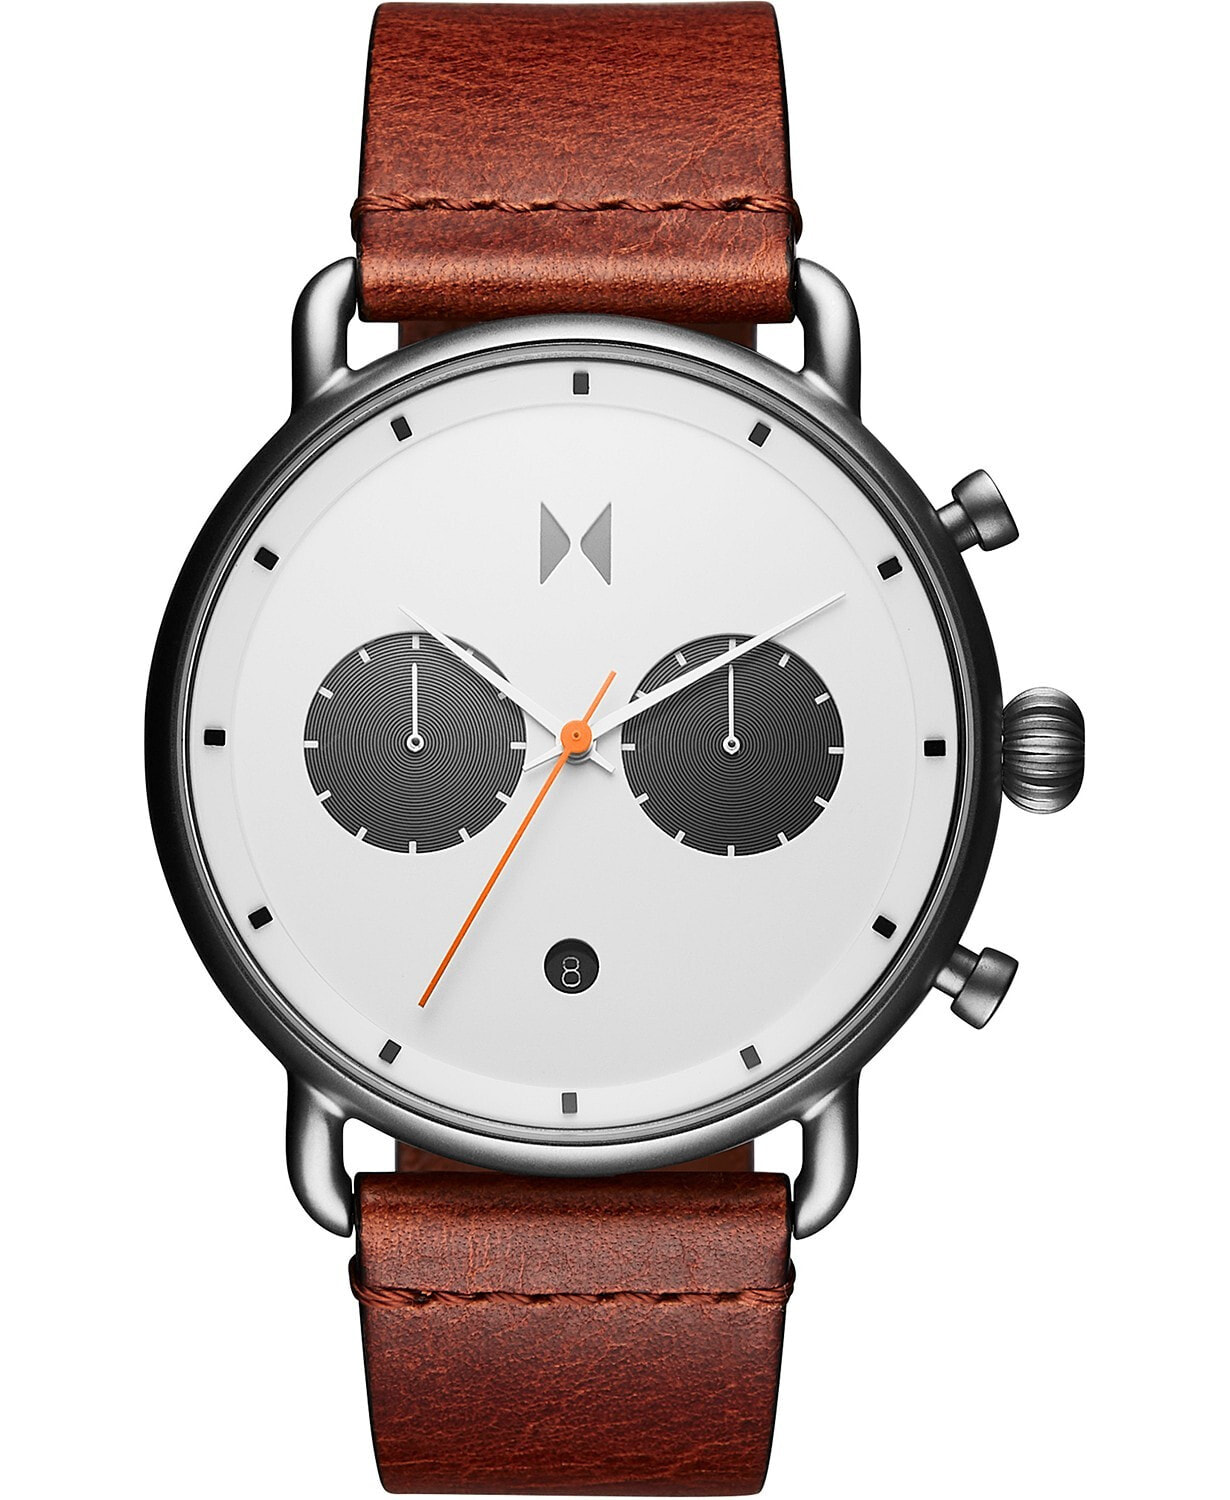 Мужские наручные часы с коричневым кожаным ремешком MVMT Chronograph Rugged Pack Sienna Tan Leather Strap Watch 47mm